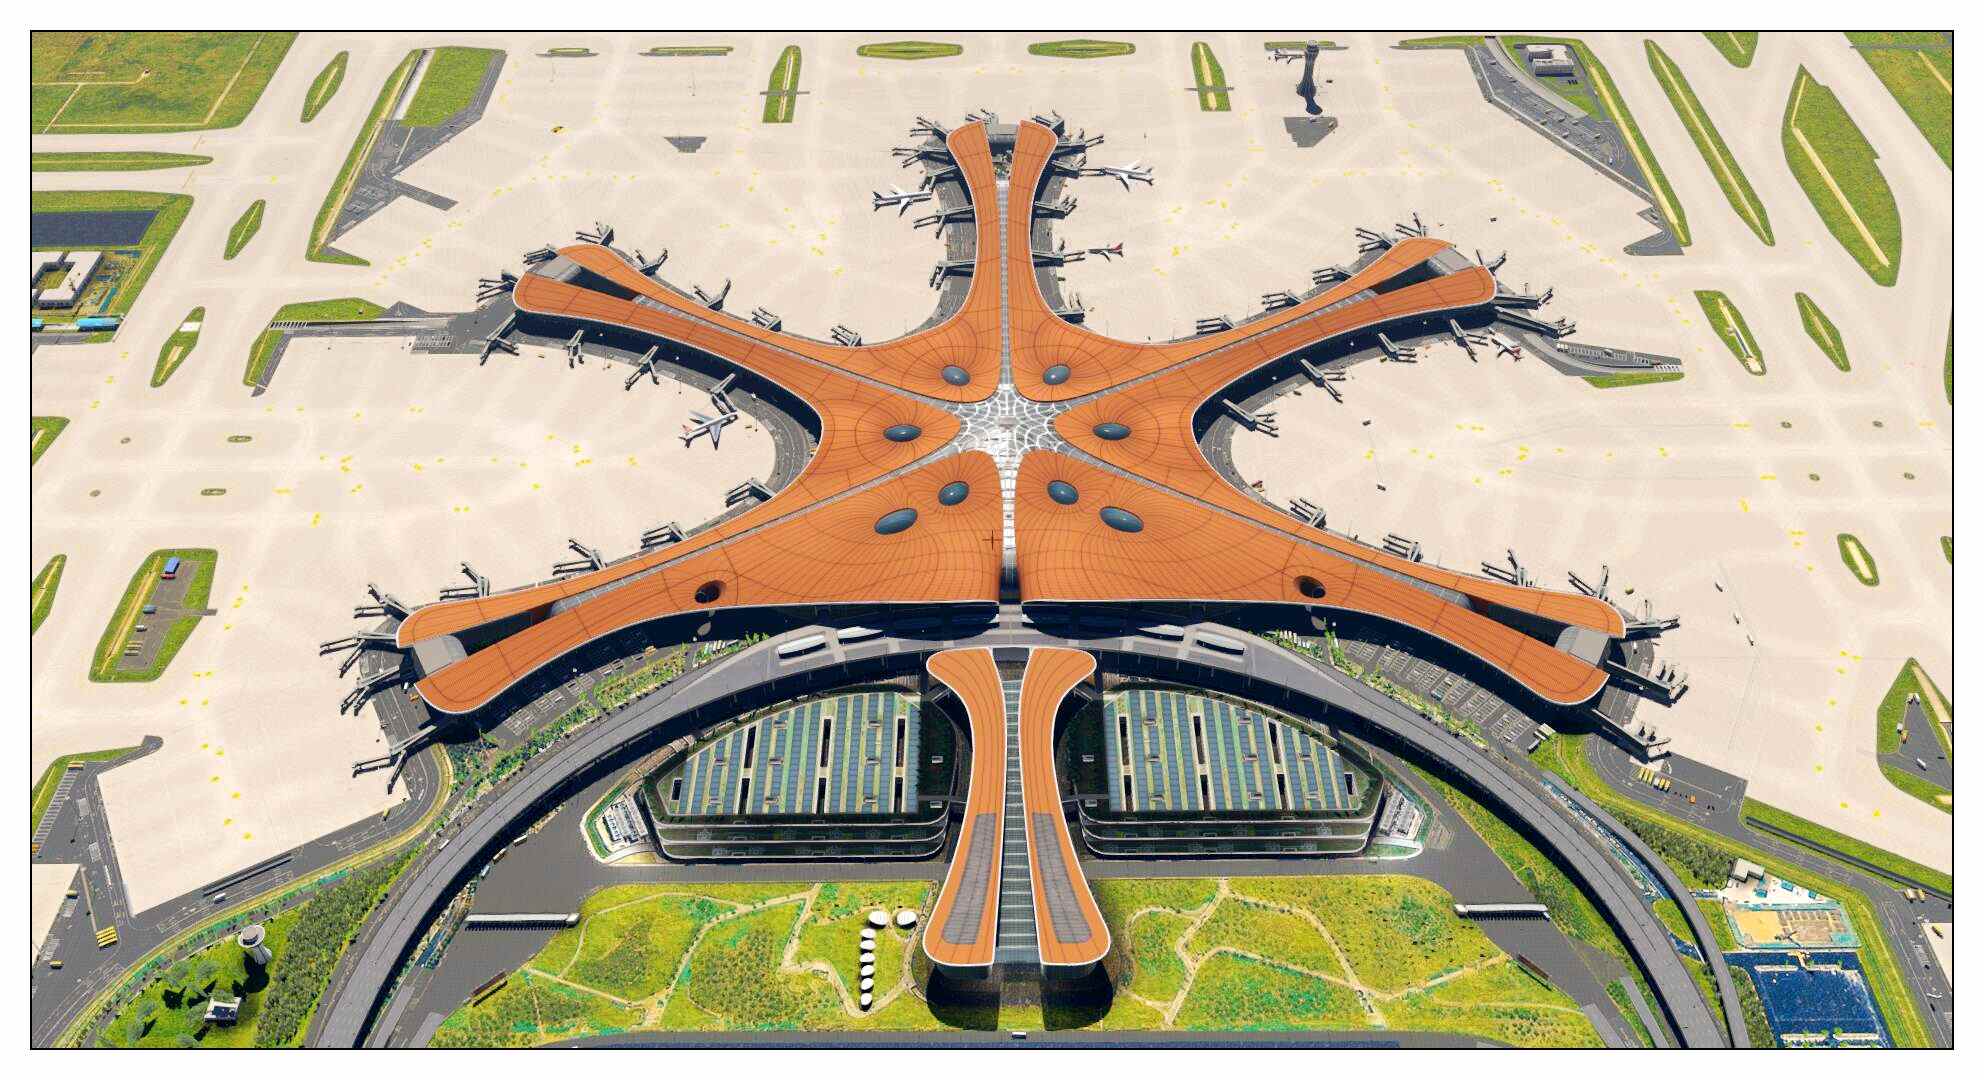 【X-Plane】ZBAD北京大兴国际机场-正式发布-6429 